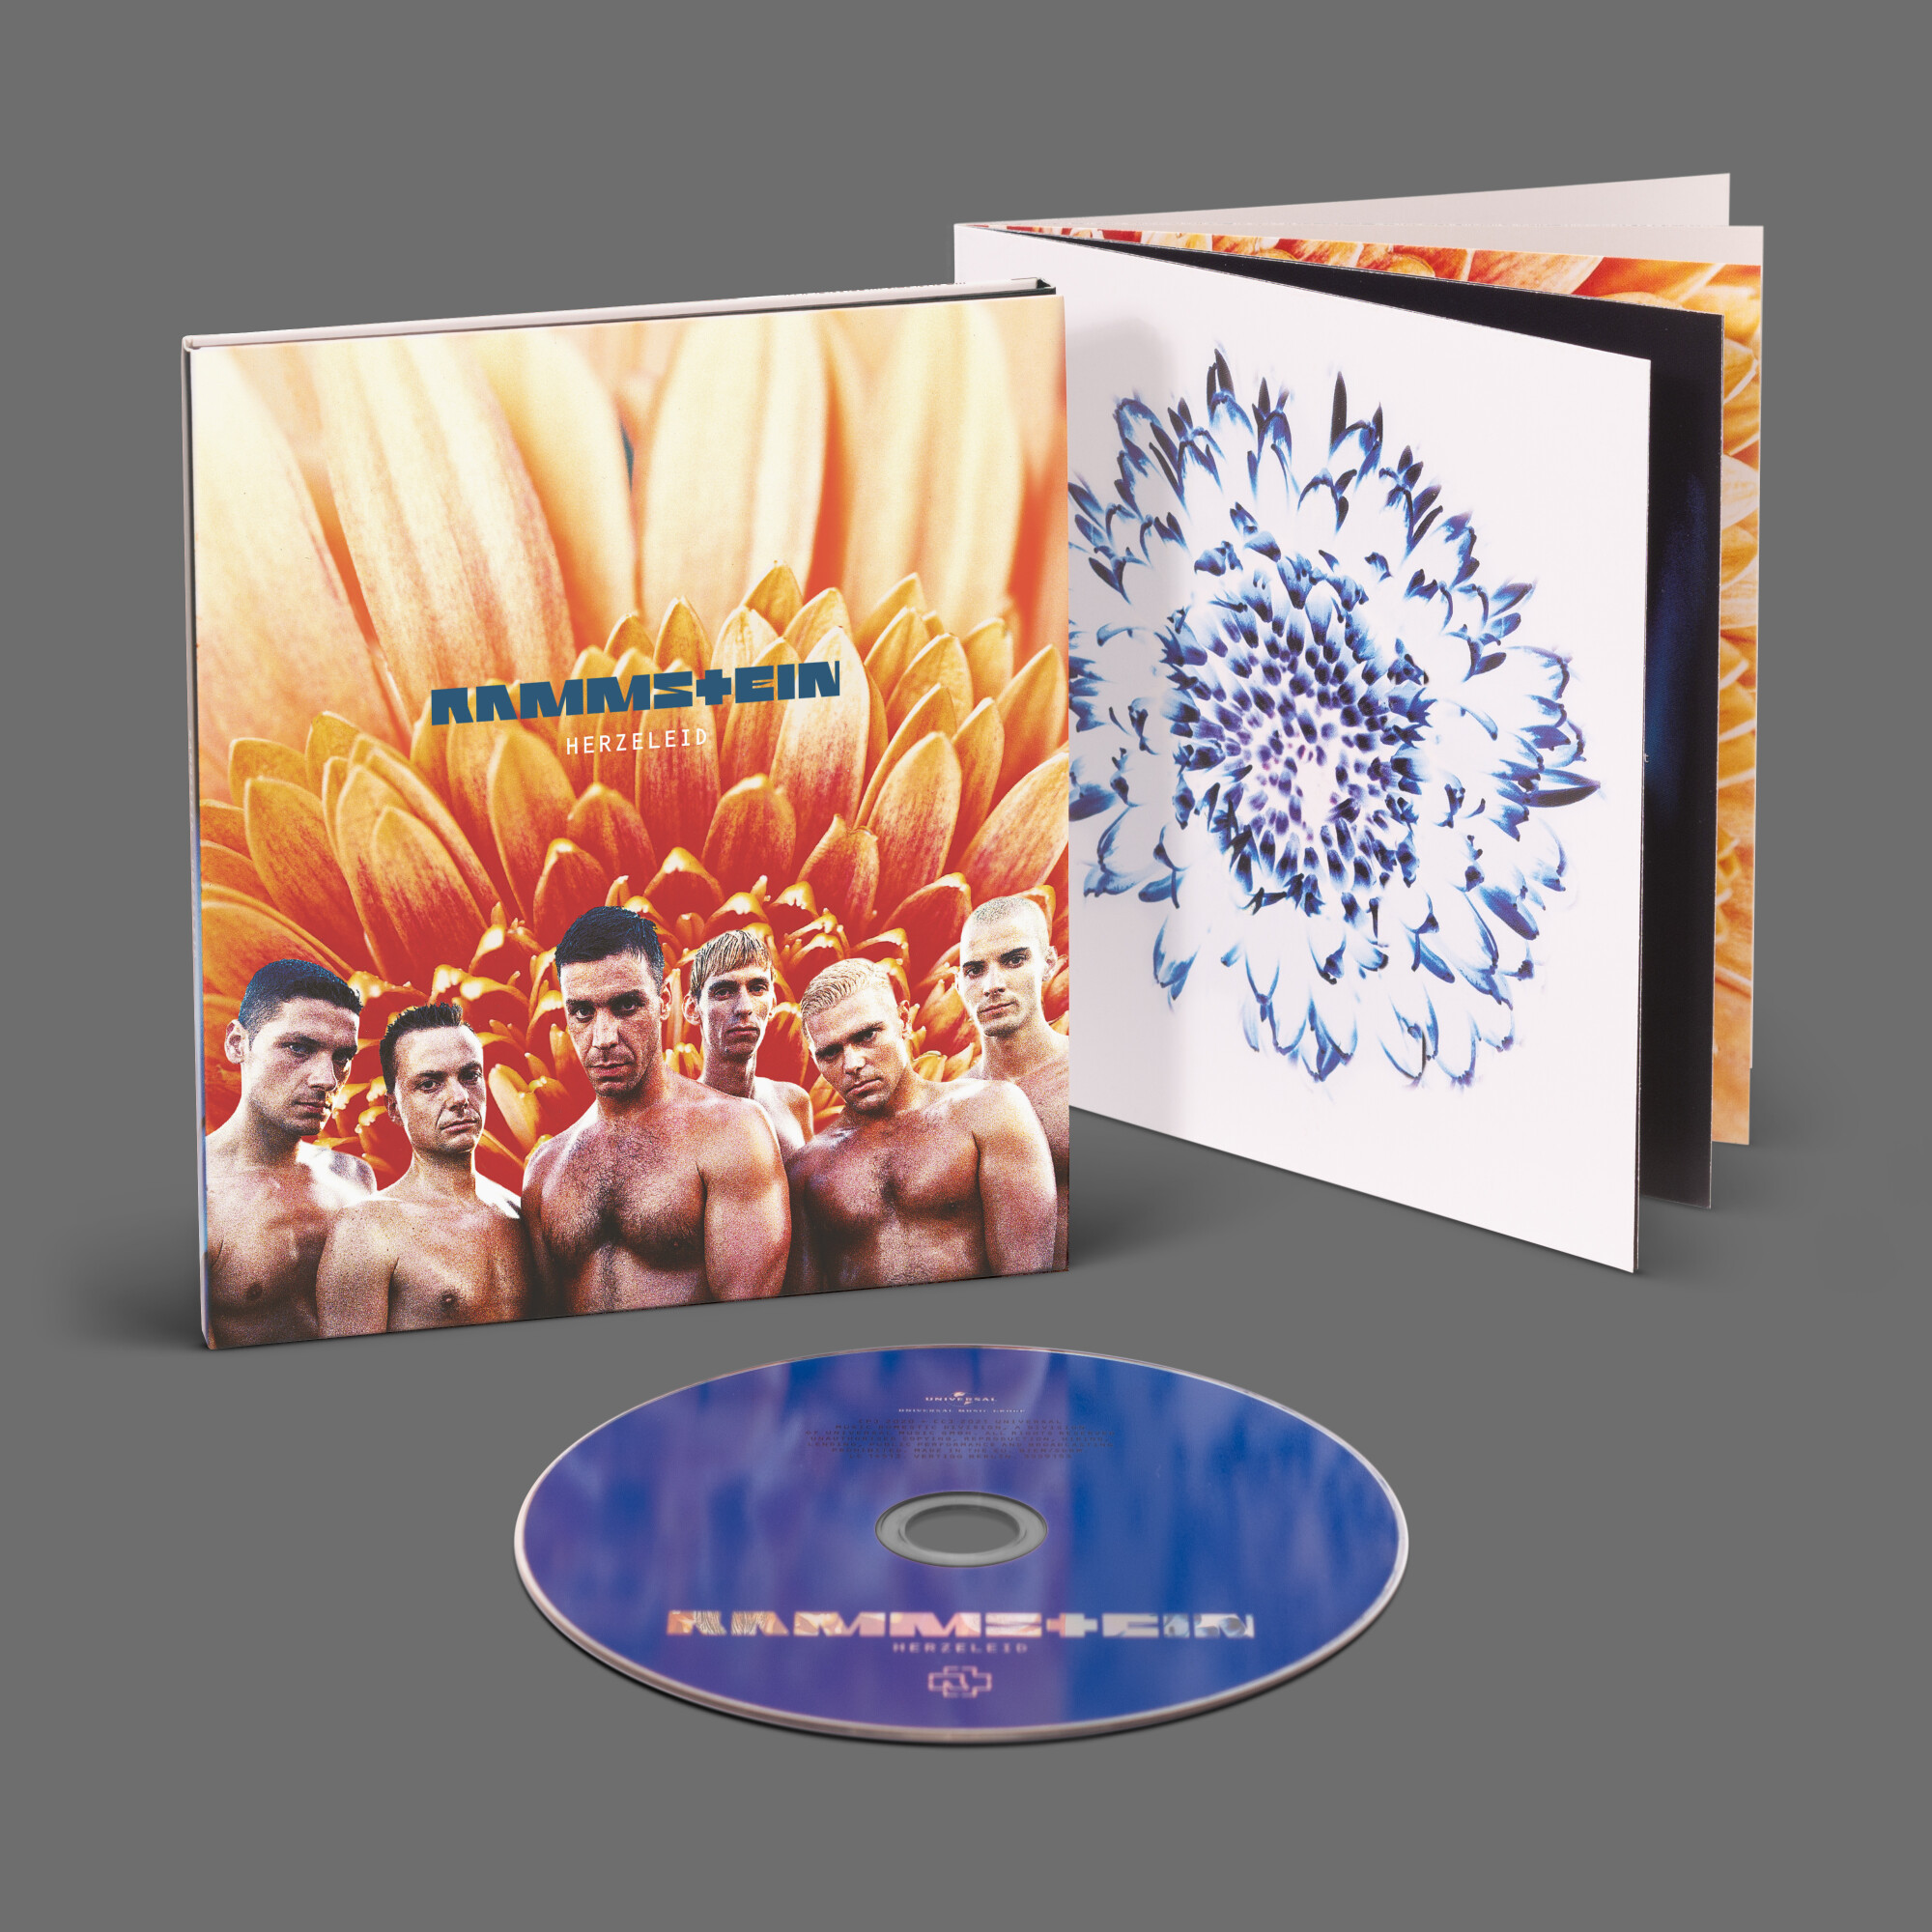 Rammstein Album ”Herzeleid”, CD